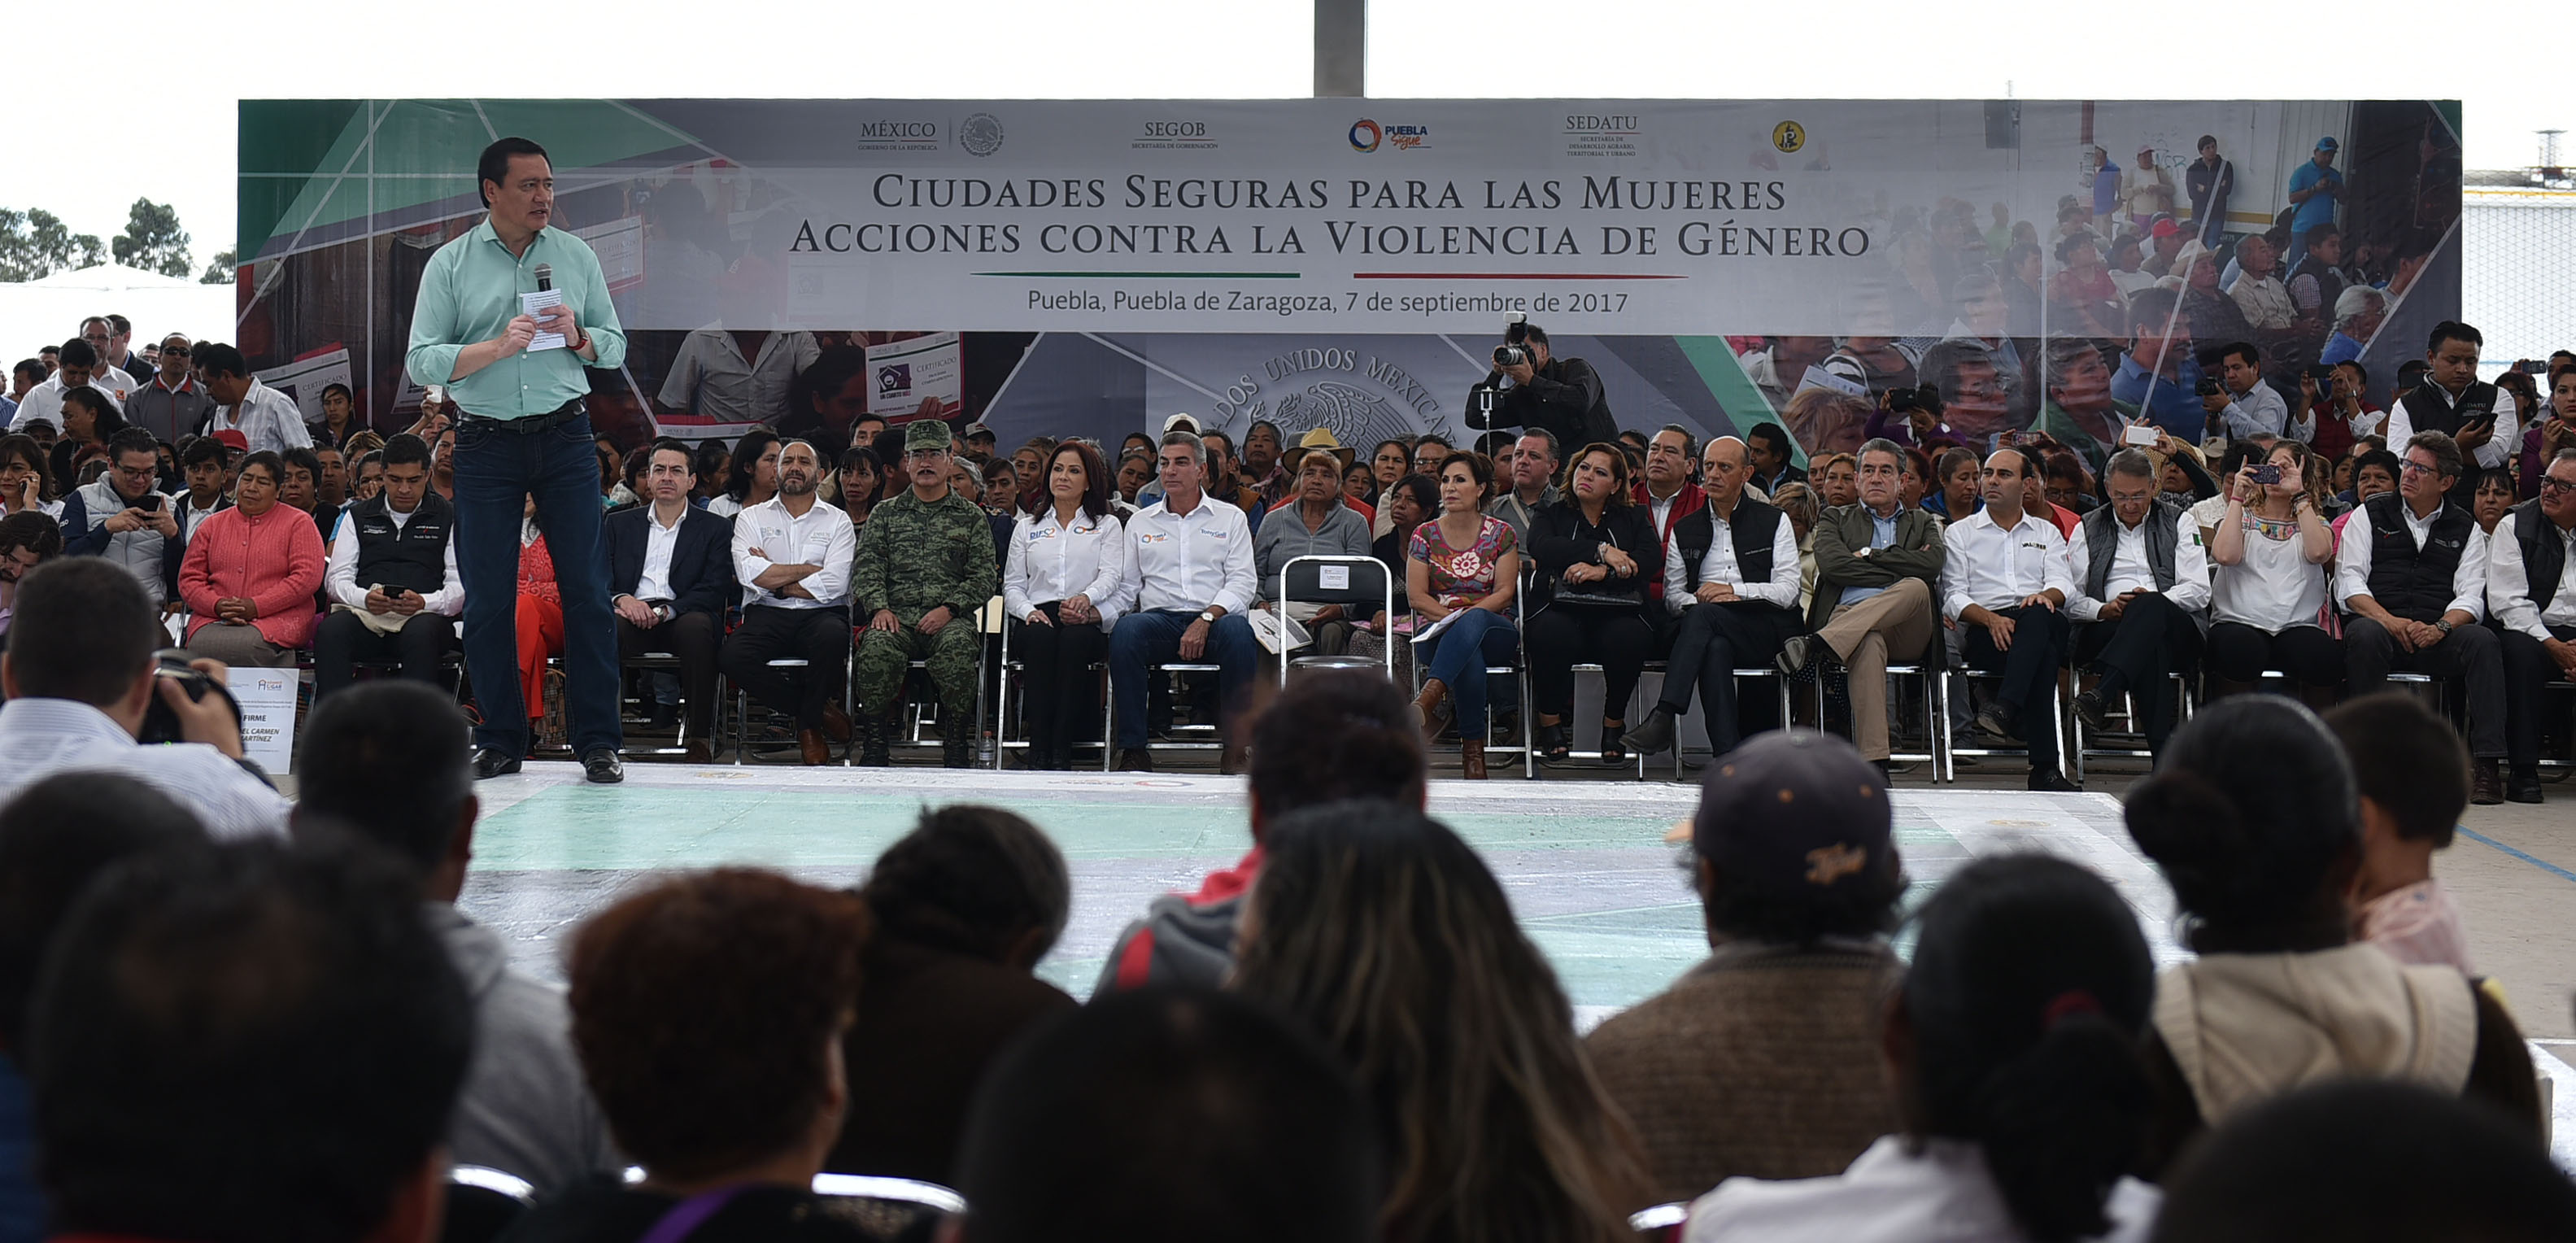 El Secretario de Gobernación, Miguel Ángel Osorio Chong, encabezó hoy aquí el evento Ciudades Seguras para las Mujeres, Acciones contra la Violencia de Género, donde hizo un llamado a evitar la violencia contra las mujeres y denunciar cualquier maltrato físico, verbal, económico y emocional en contra de ellas.